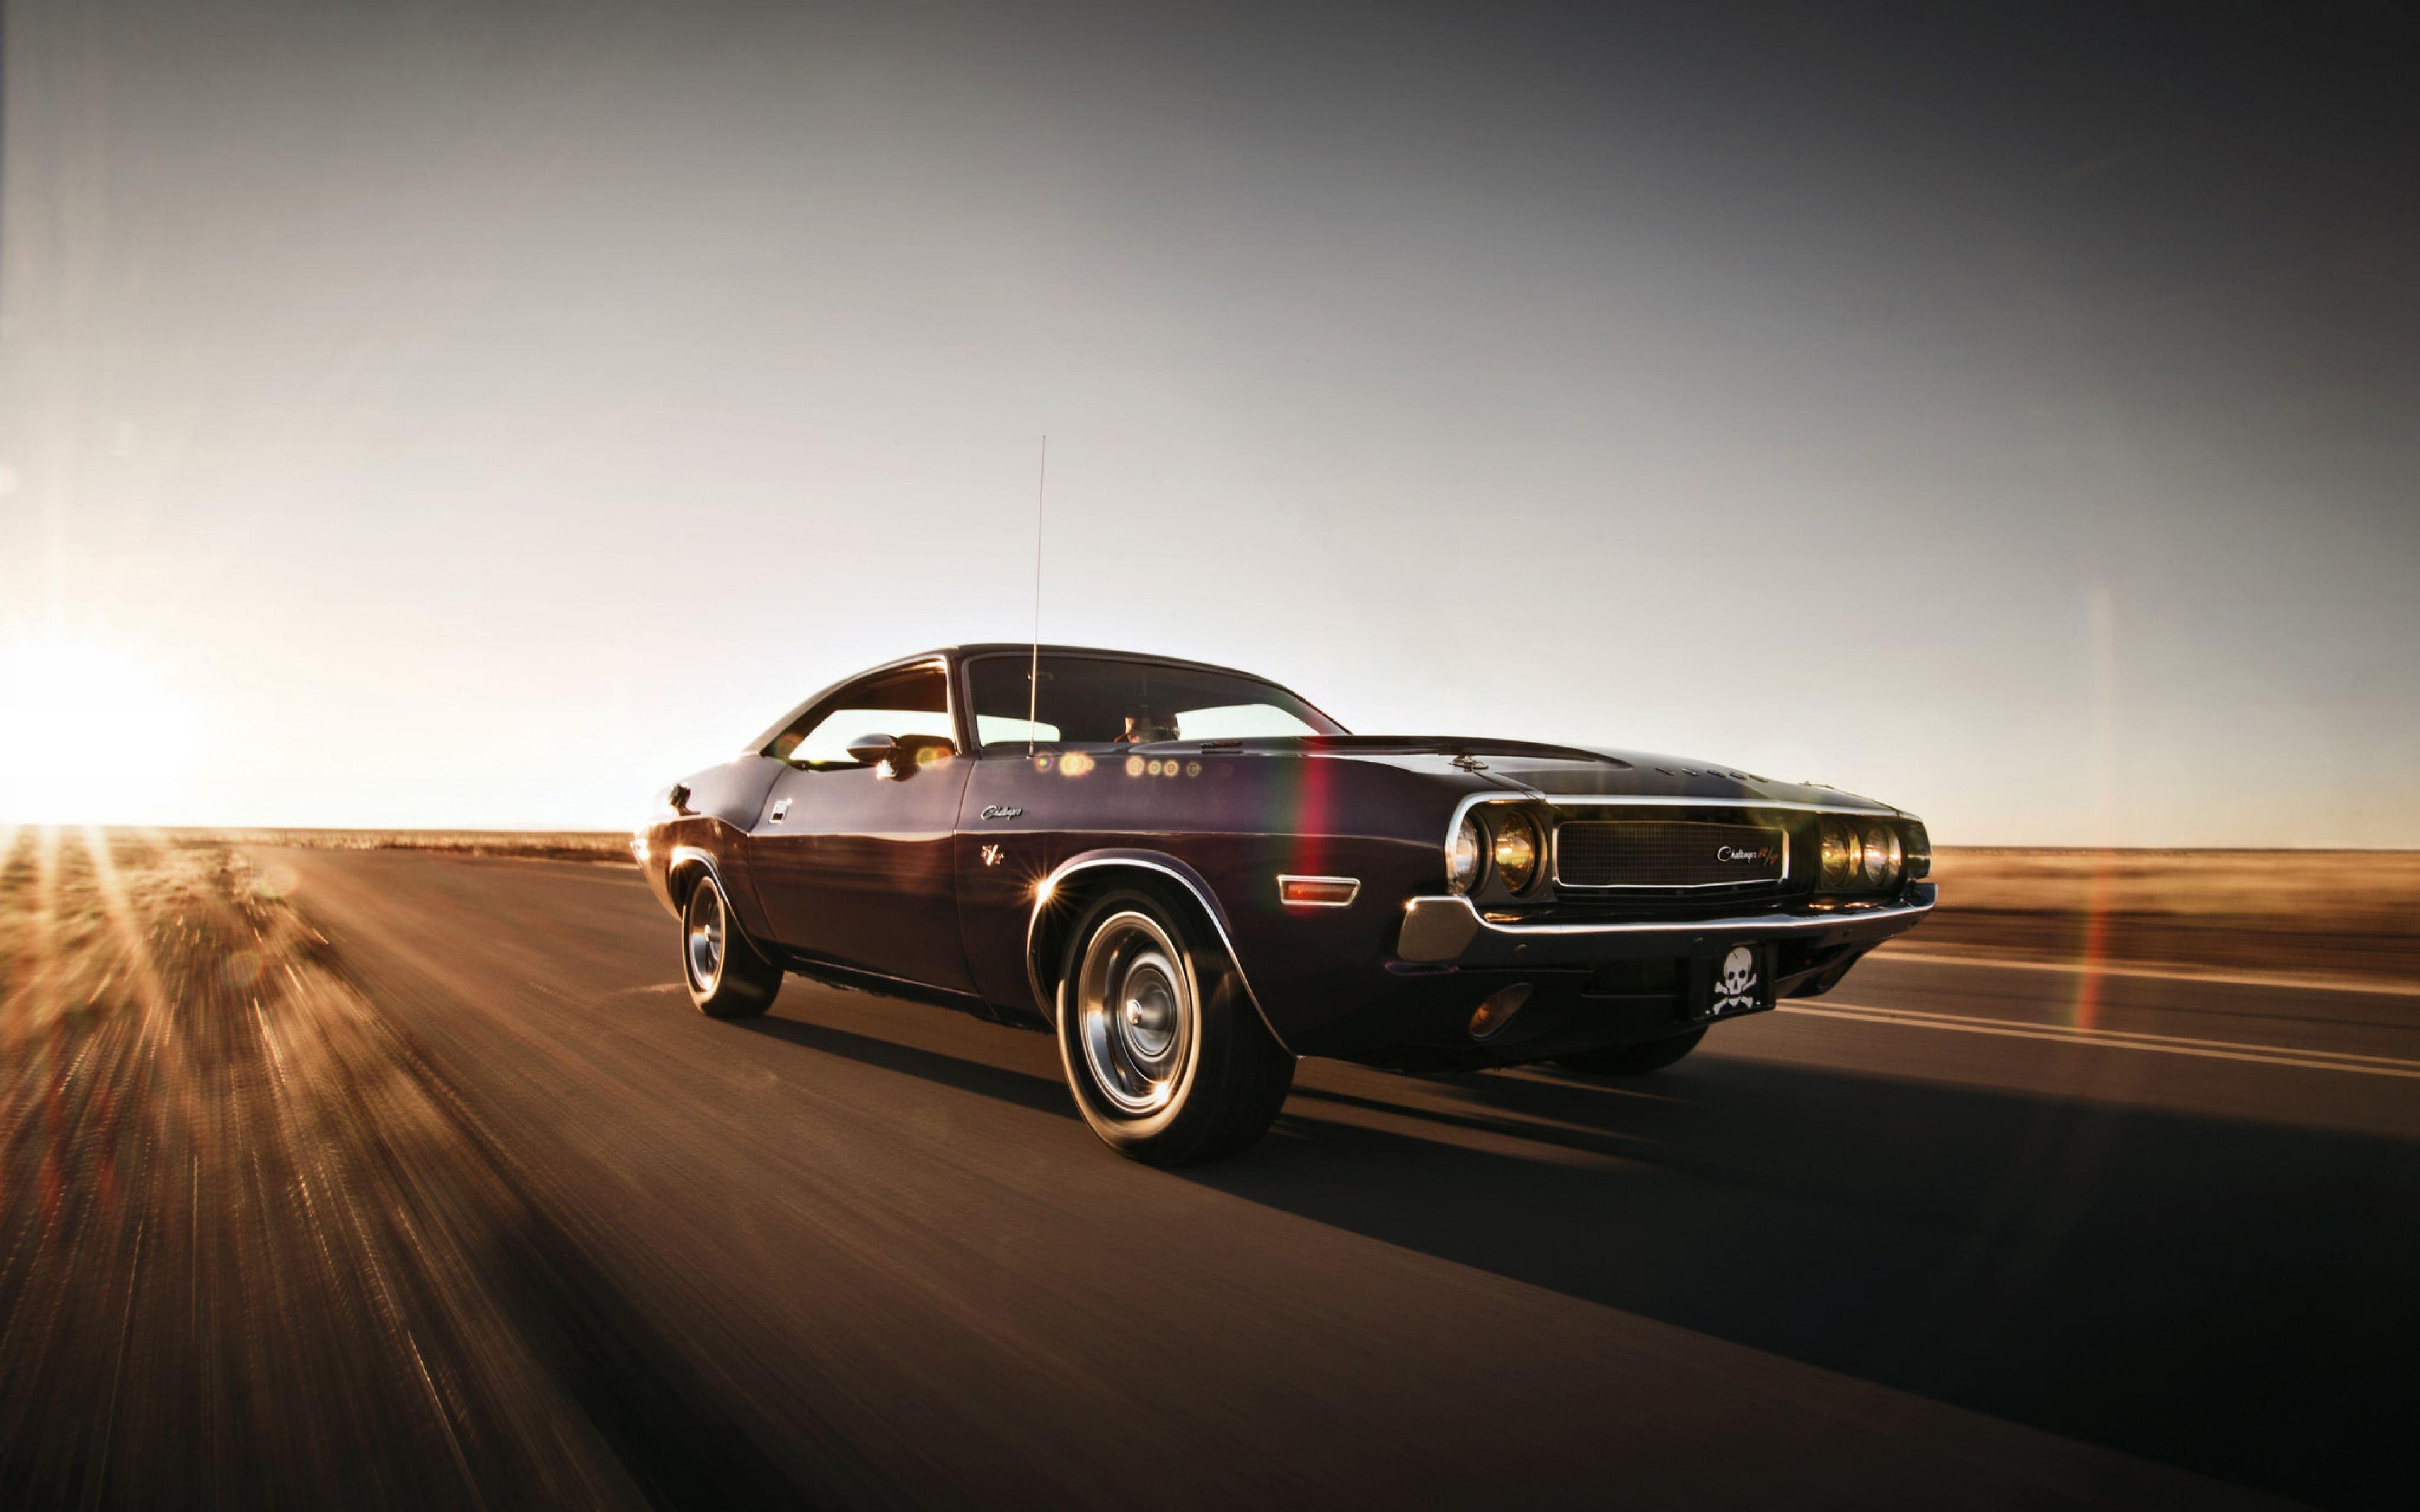 Dodge Challenger, HD Cars, 4k Wallpaper, Image, Background